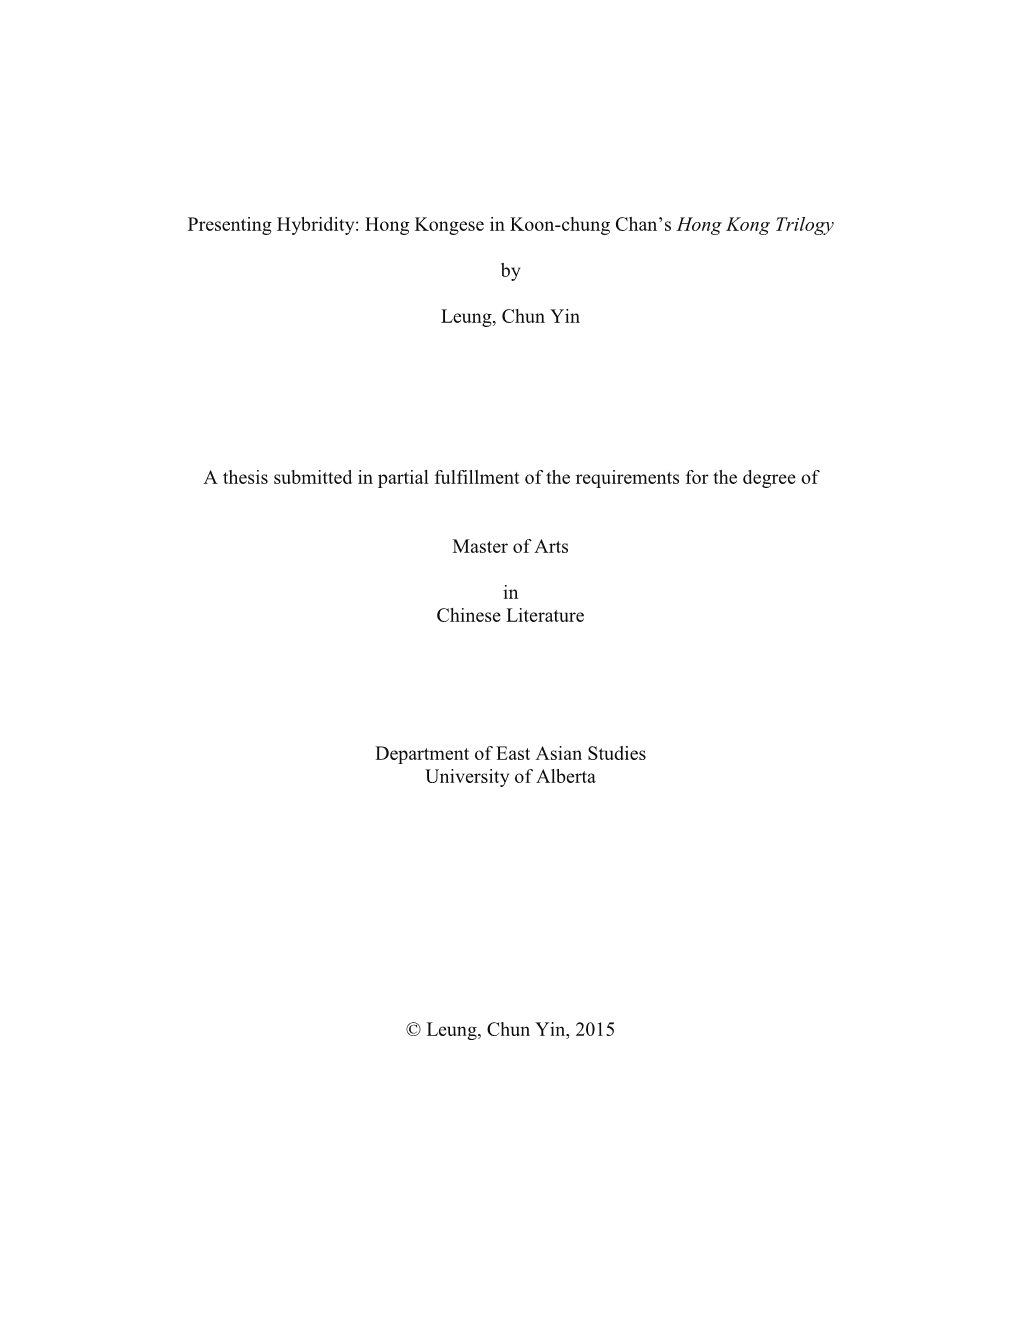 Hong Kongese in Koon-Chung Chan's Hong Kong Trilogy